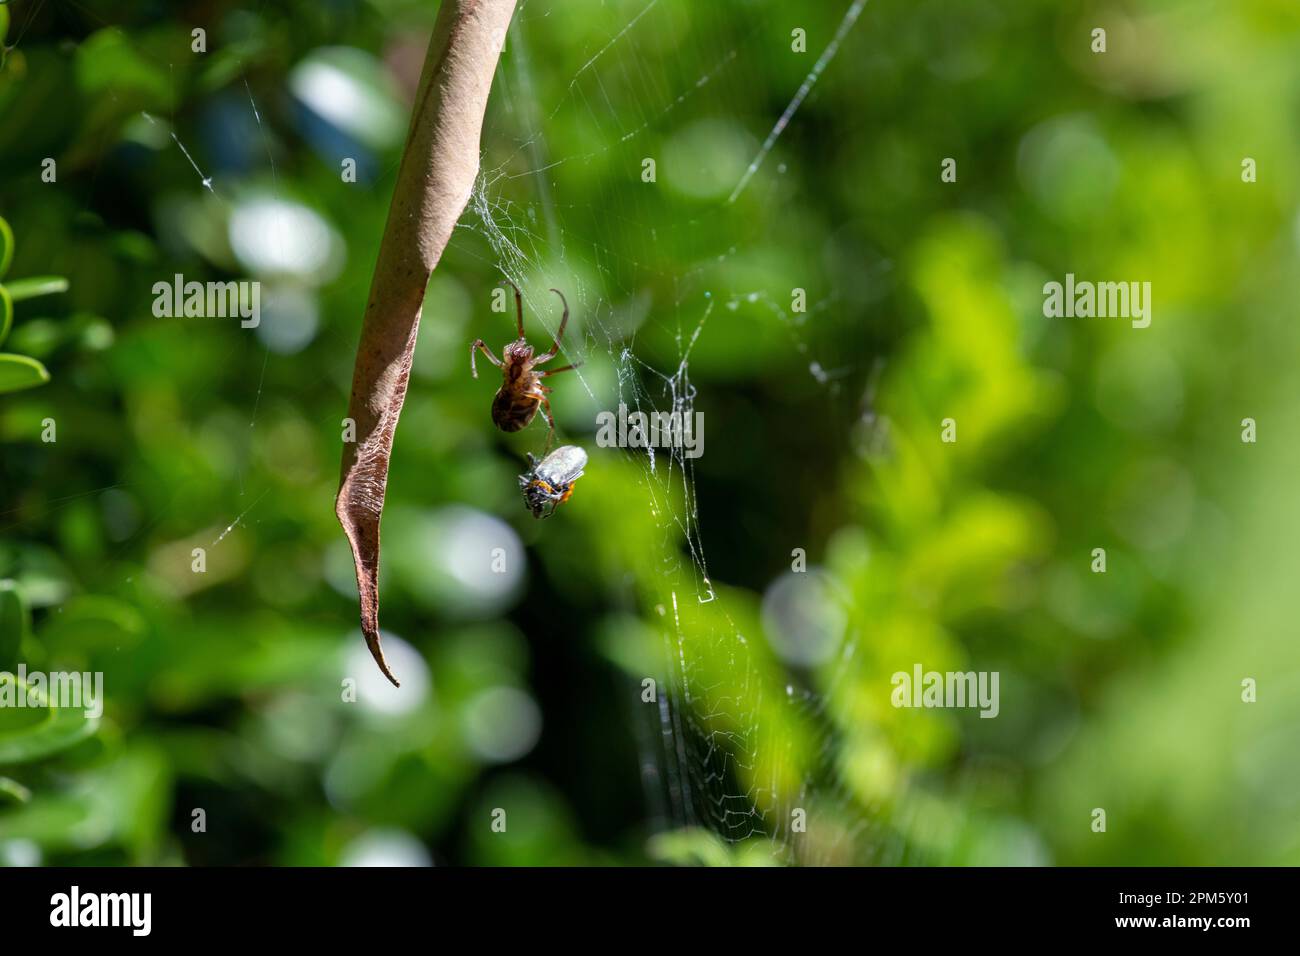 Die Leaf-Curling Spider (Phonognatha graeffei) fängt Beute im Netz in Sydney, New South Wales, Australien. (Foto: Tara Chand Malhotra) Stockfoto